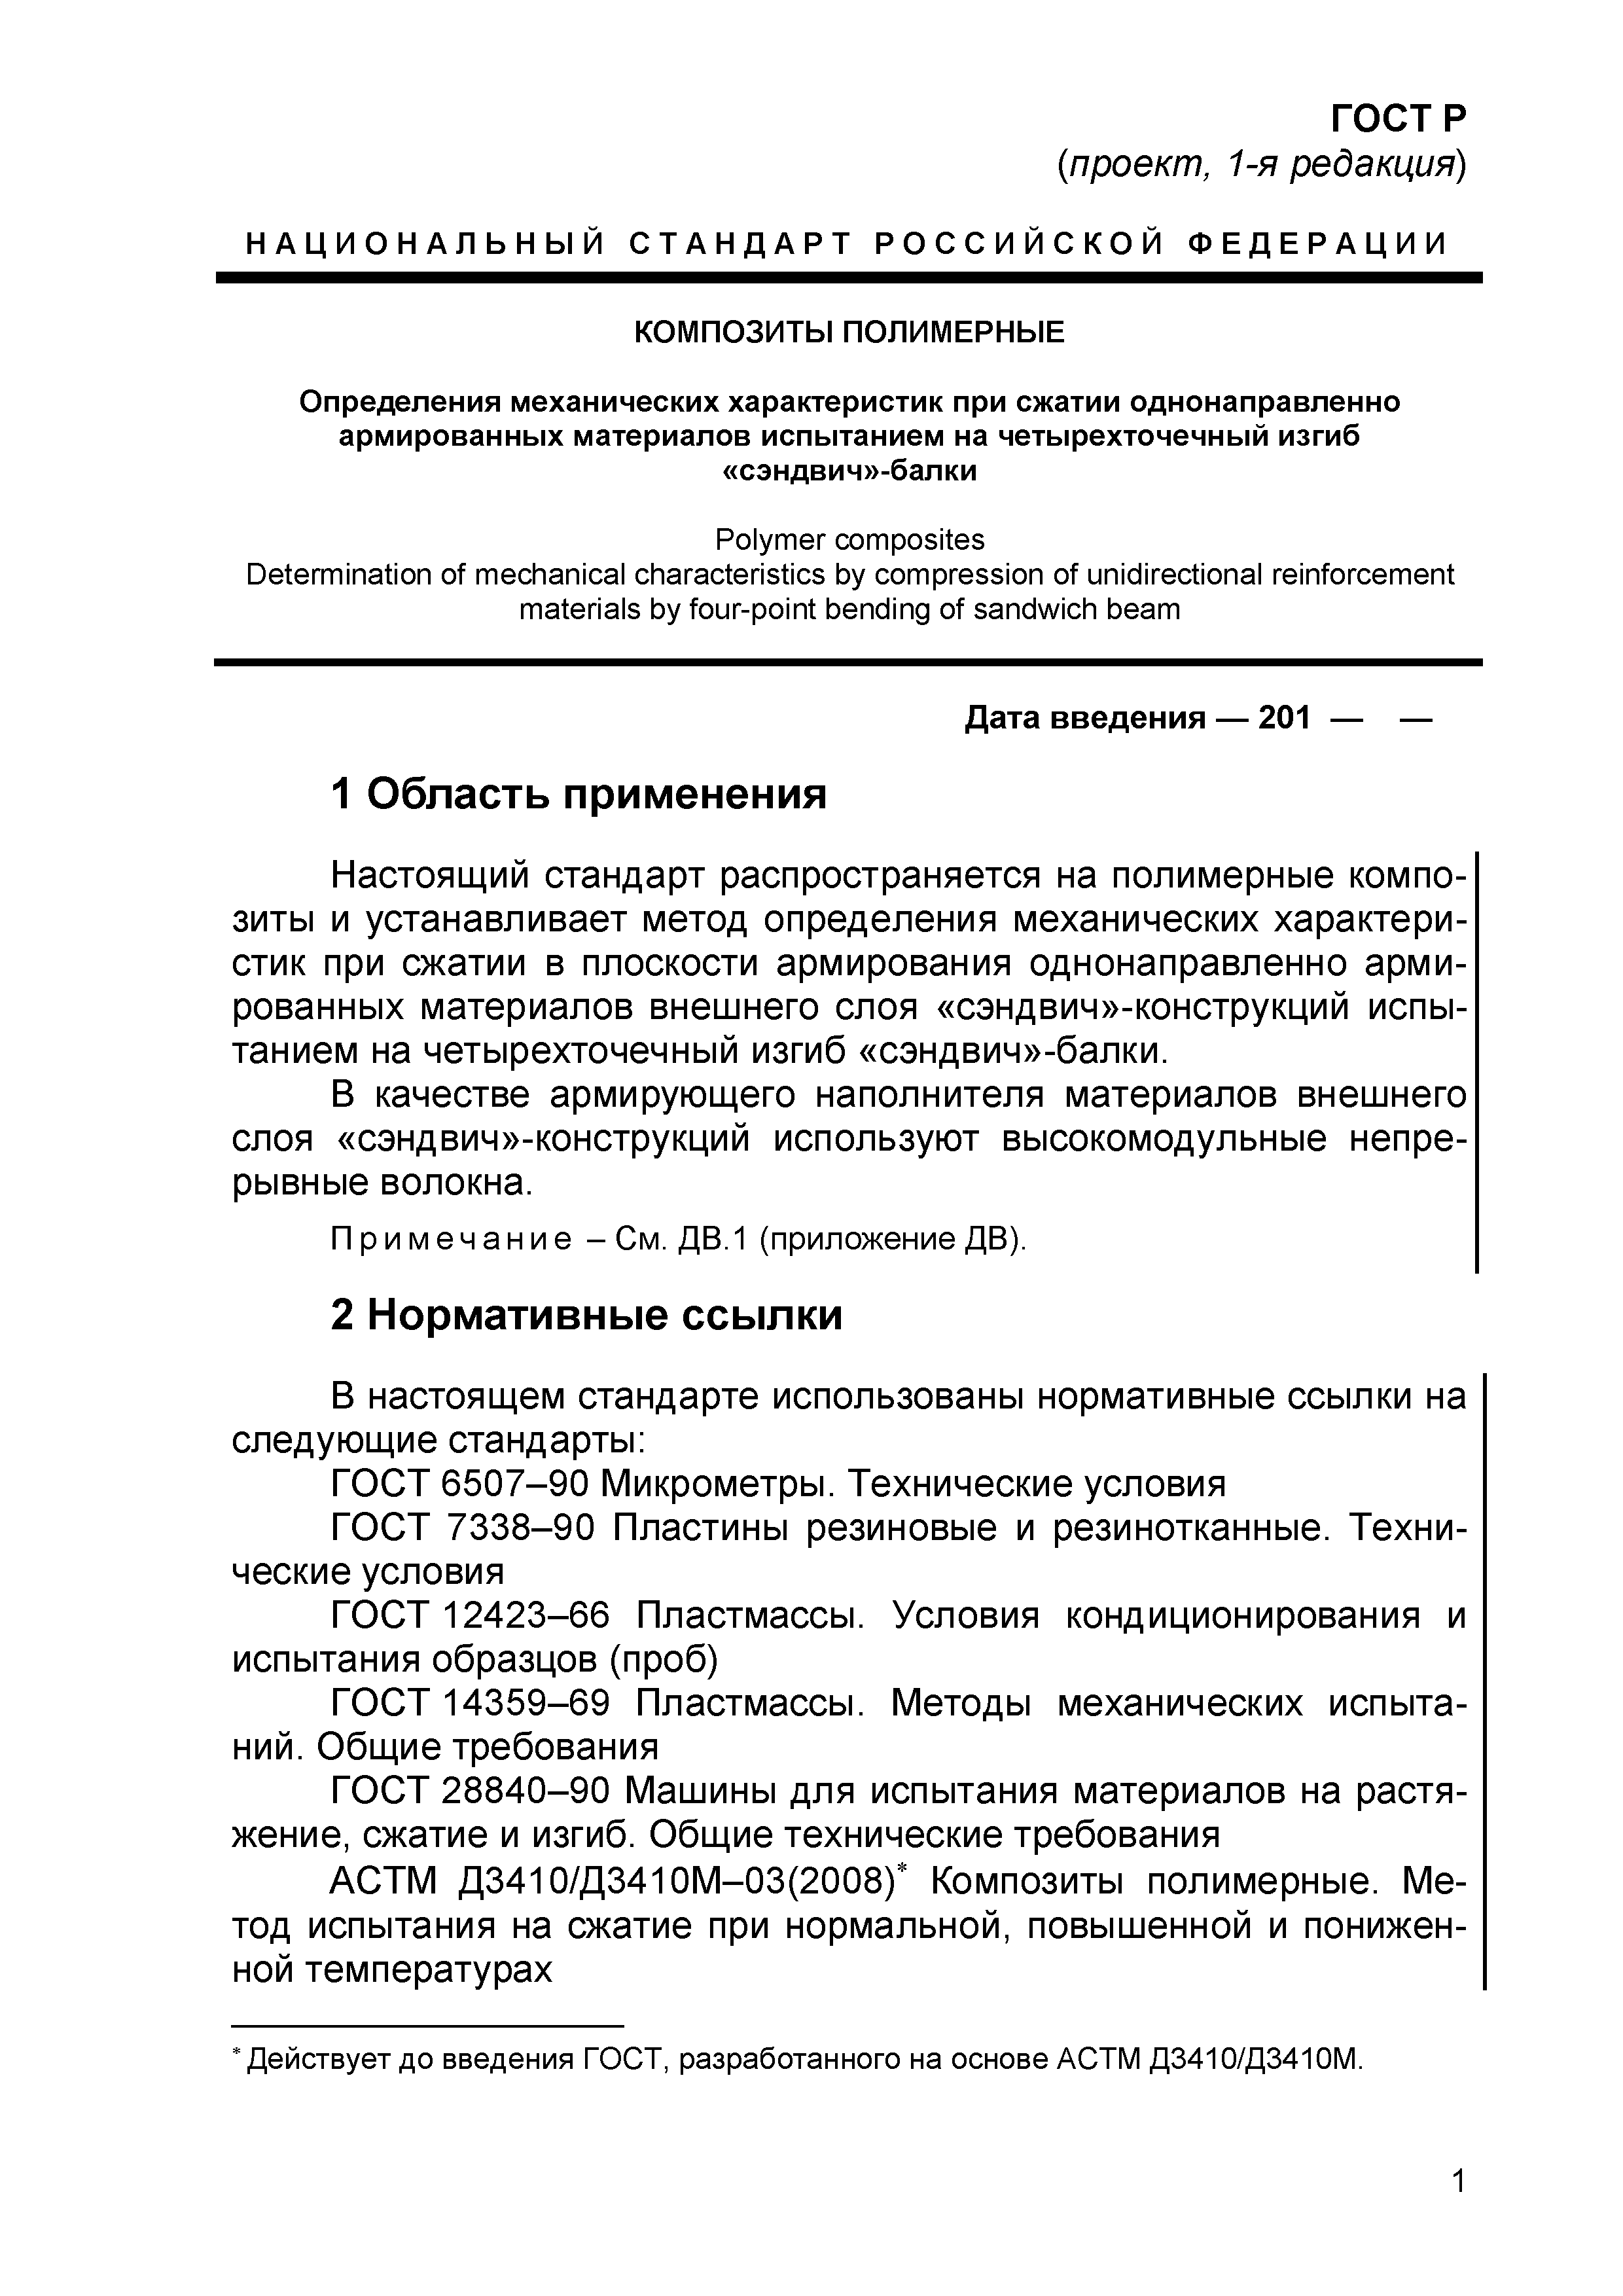 ГОСТ Р проект, 1-я редакция